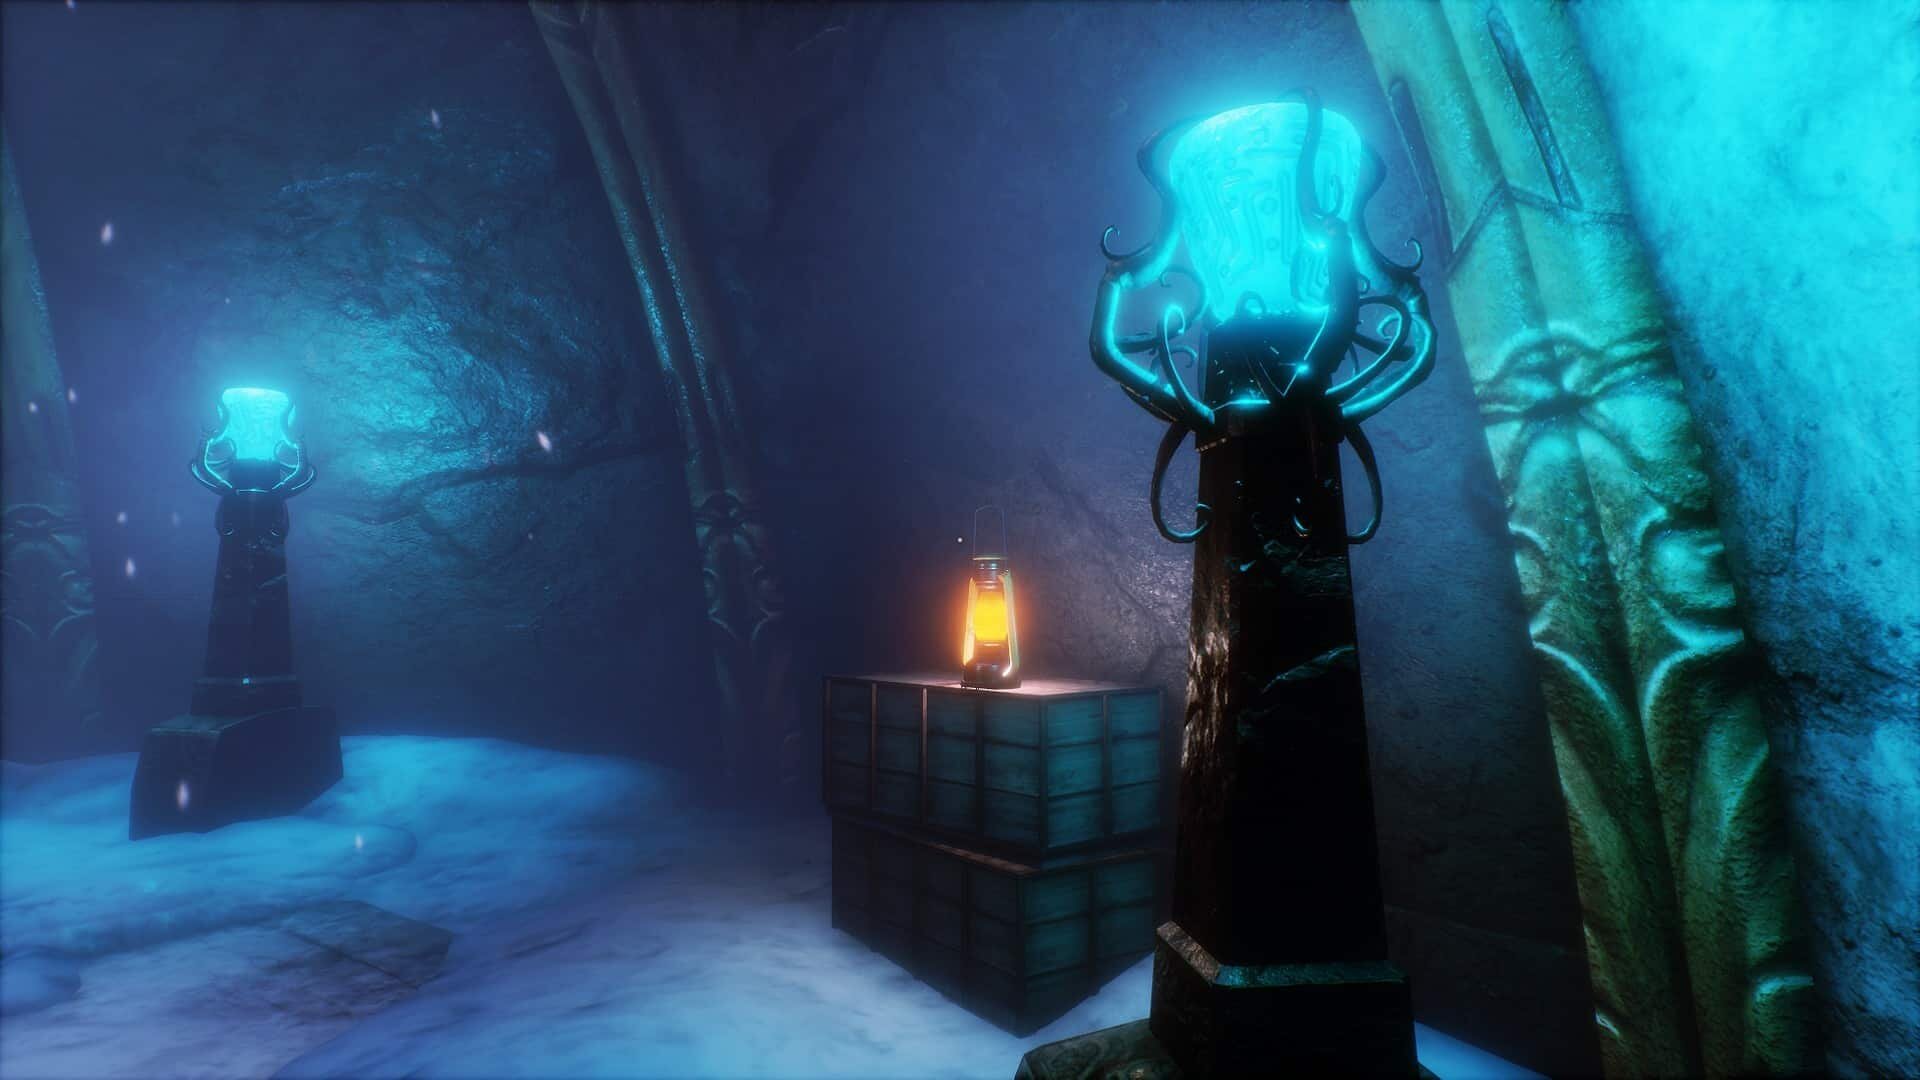 Conarium game screenshot, tentacled lantern